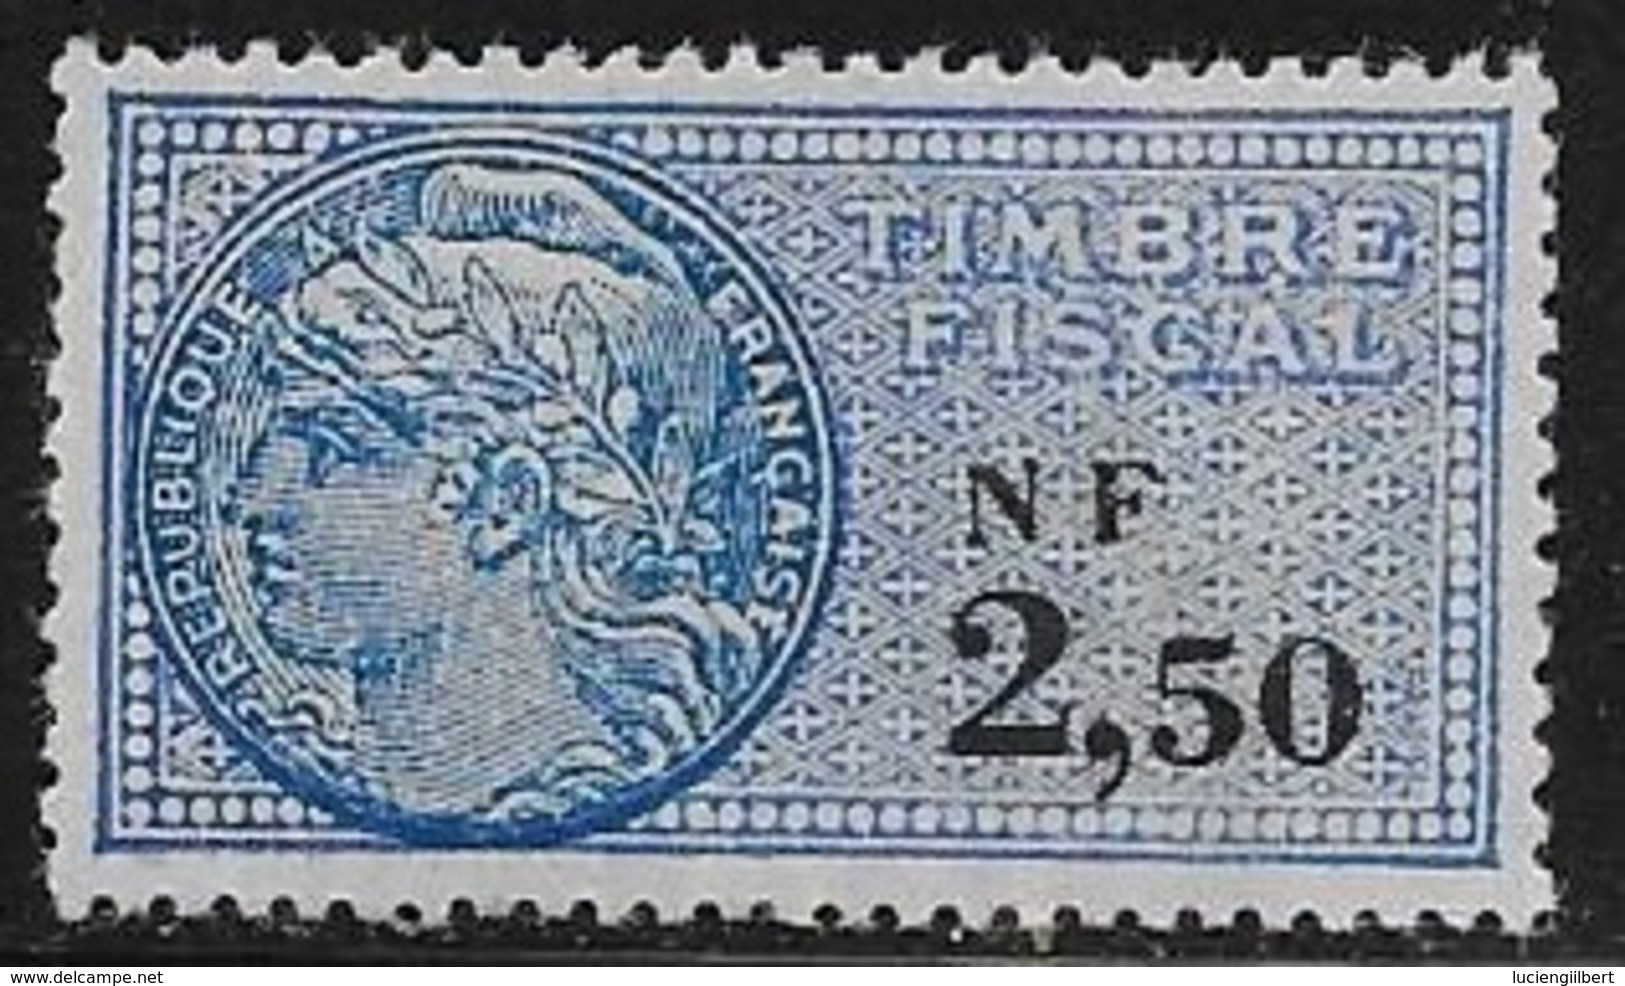 TIMBRE FISCAL N° 337**  -   2,50  NOIR   SUR Bleu   -  MEDAILLON DE DAUSSY  FOND ETOILE  -   NEUF - Marken